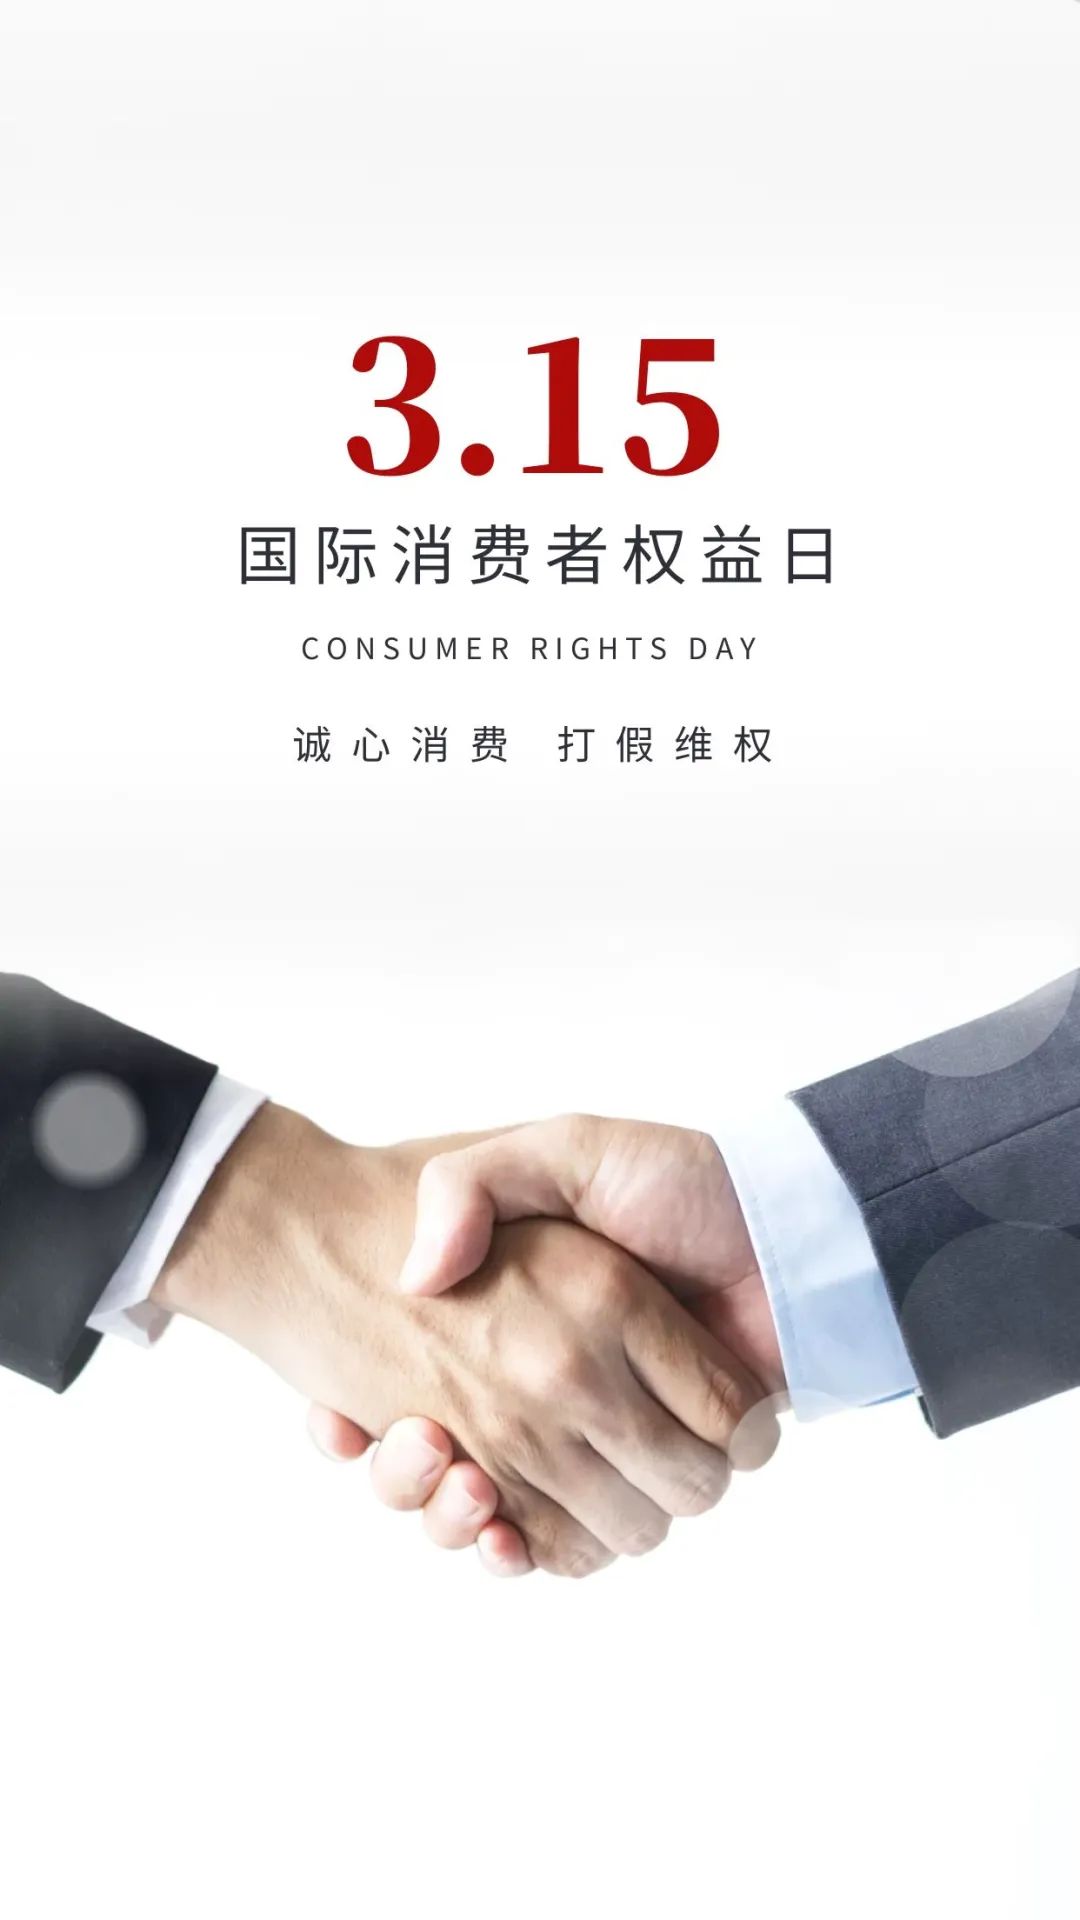 315消费者权益日图片配图大全带字